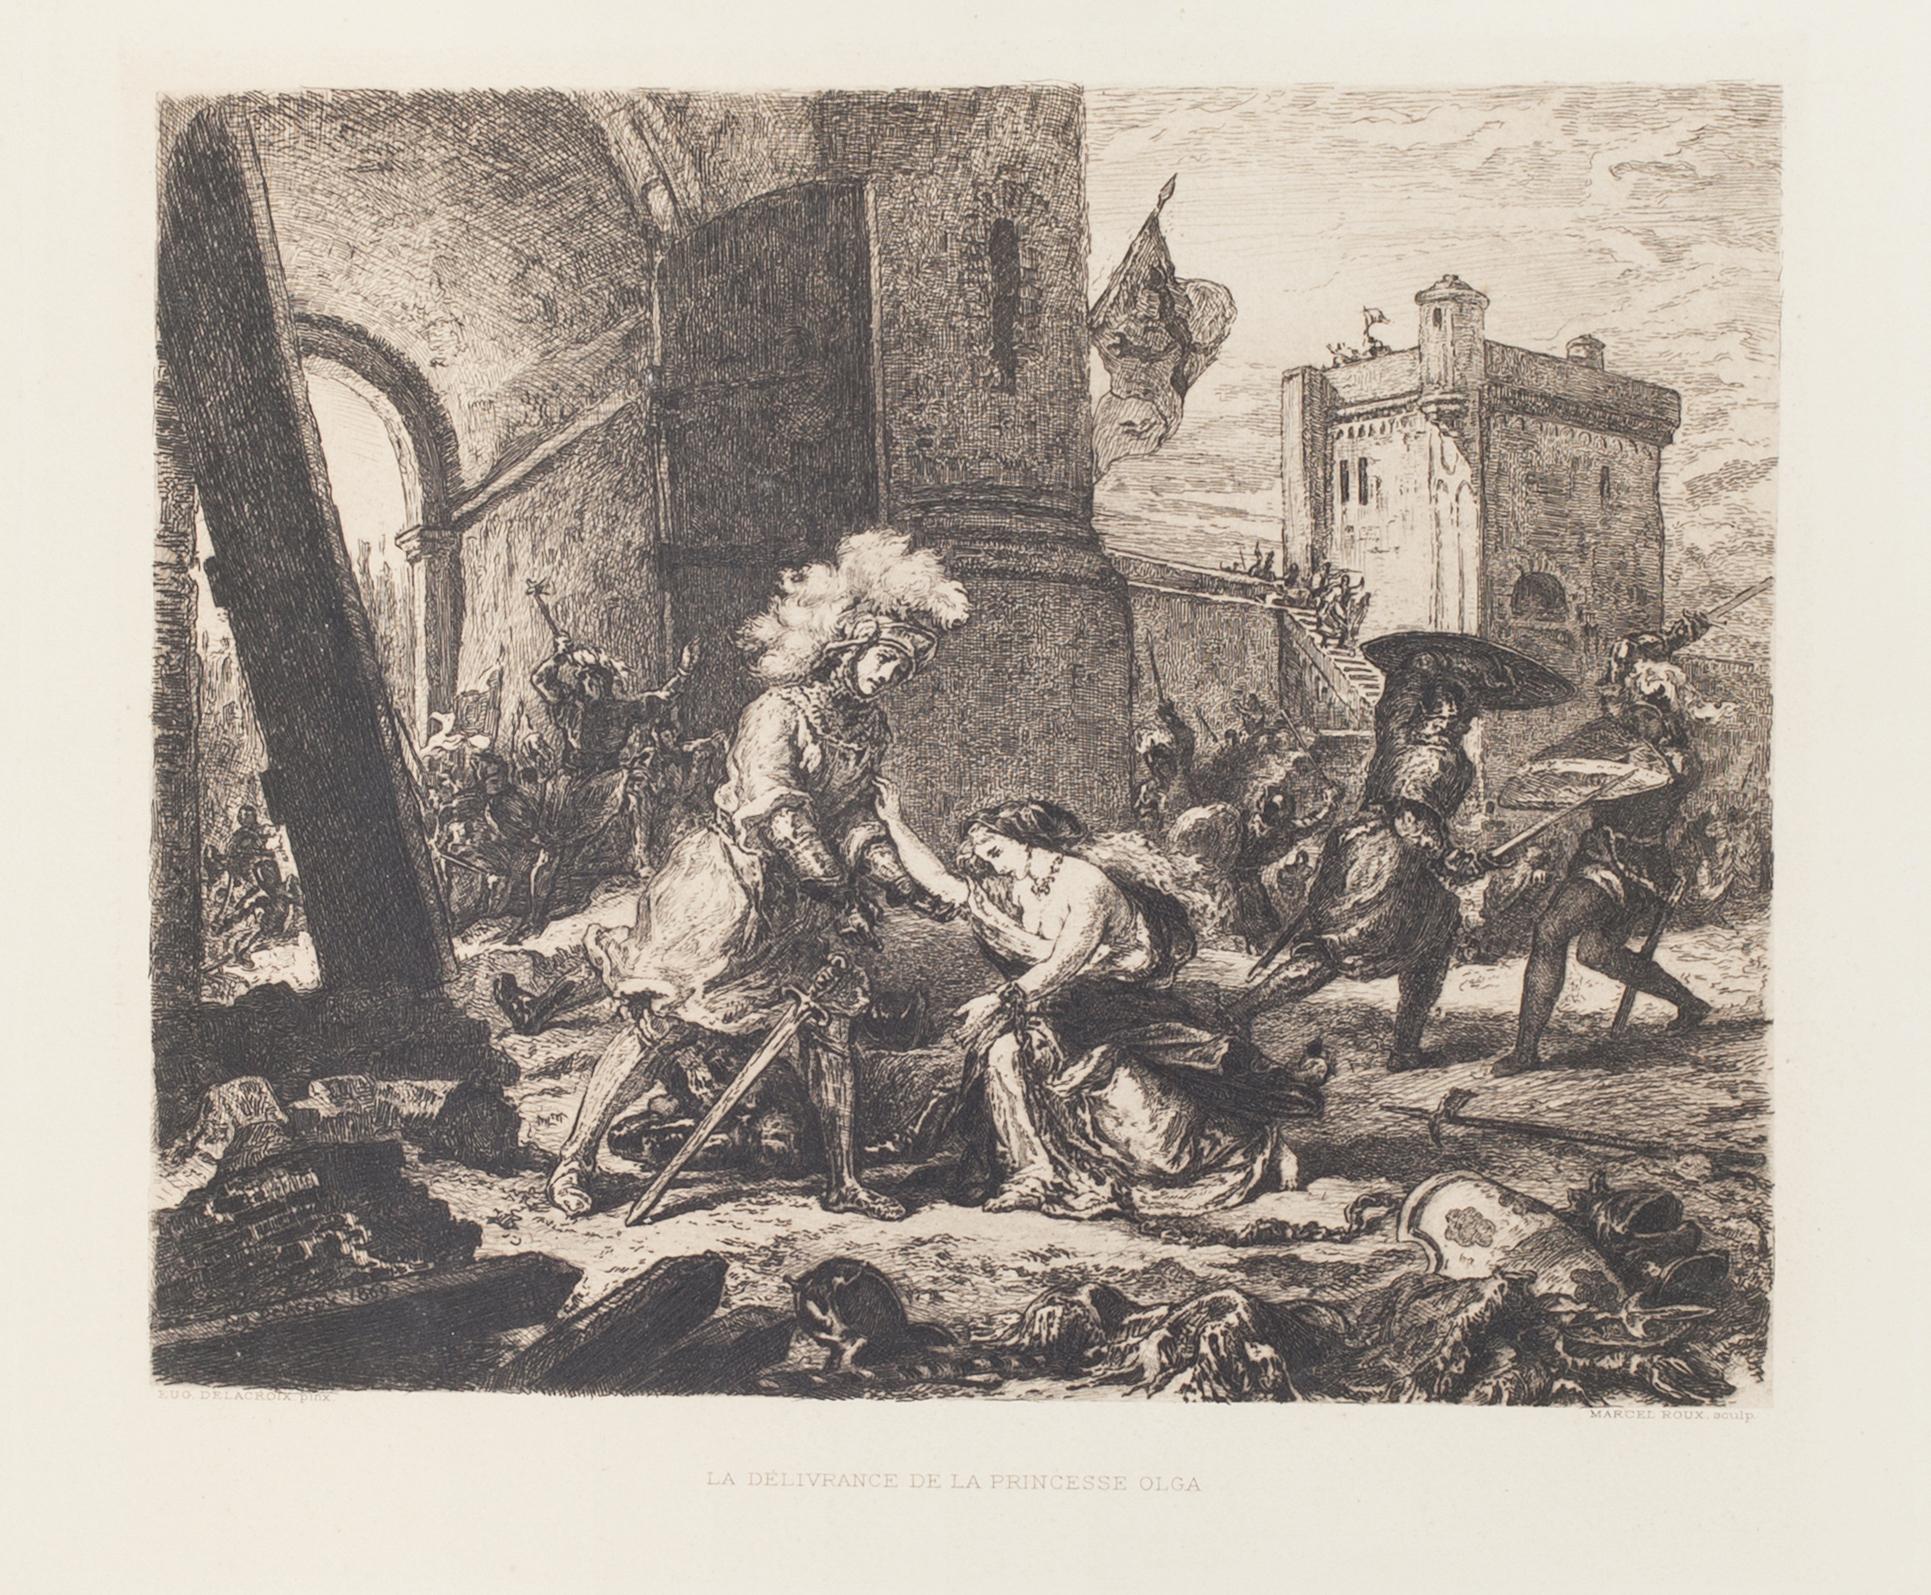 La Delivrance De La Princesse Olga - Etching by M.Roux after E. Delacroix - 1911 - Print by Eugene Delacroix